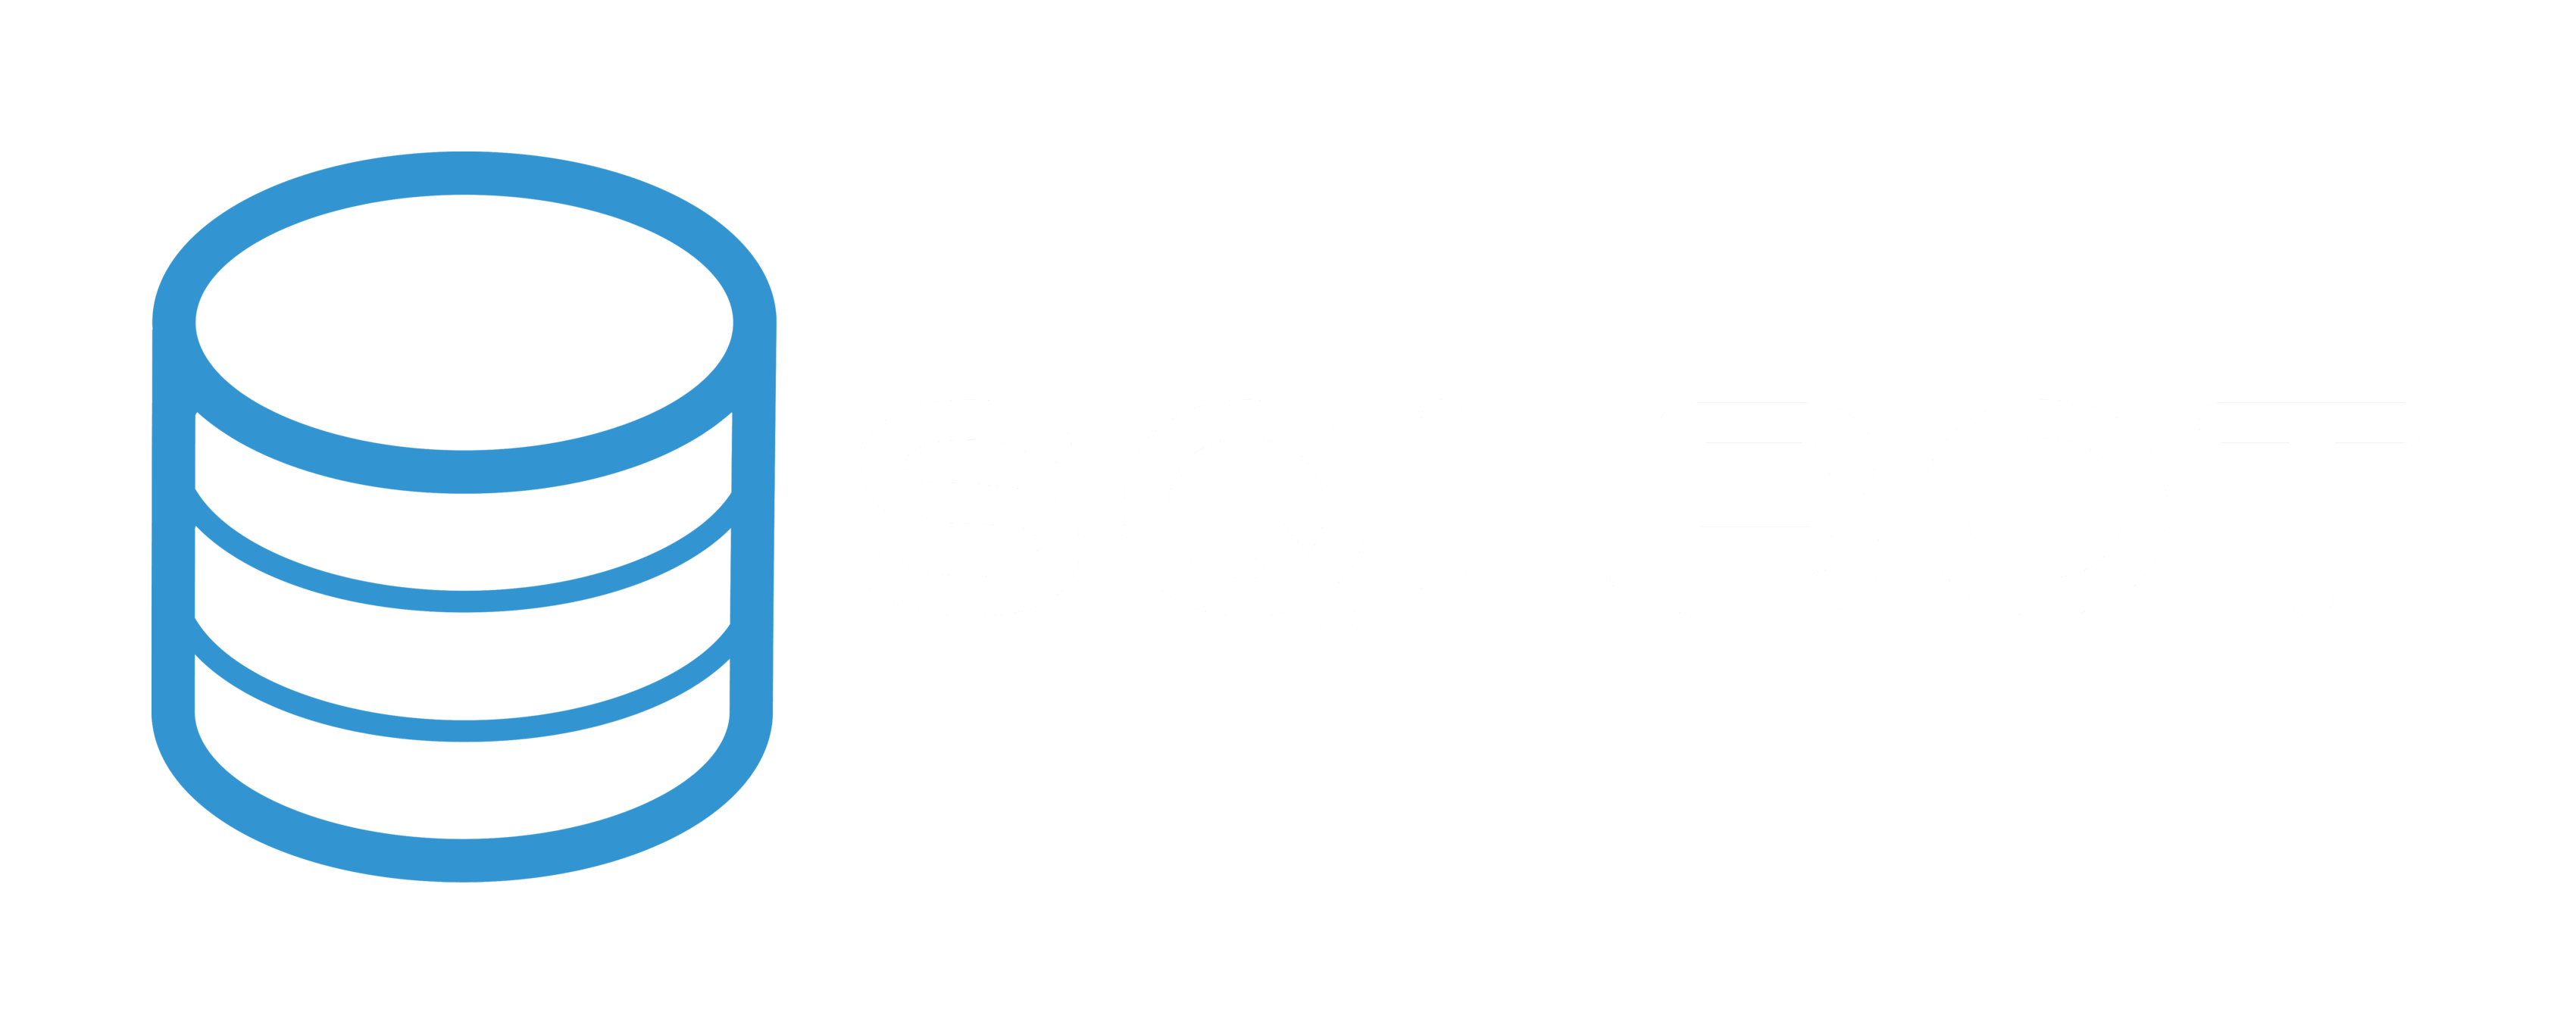 SQL Server Logo - SQL Reporting in Slack & Email - MySQL, Postgres, and MS SQLServer